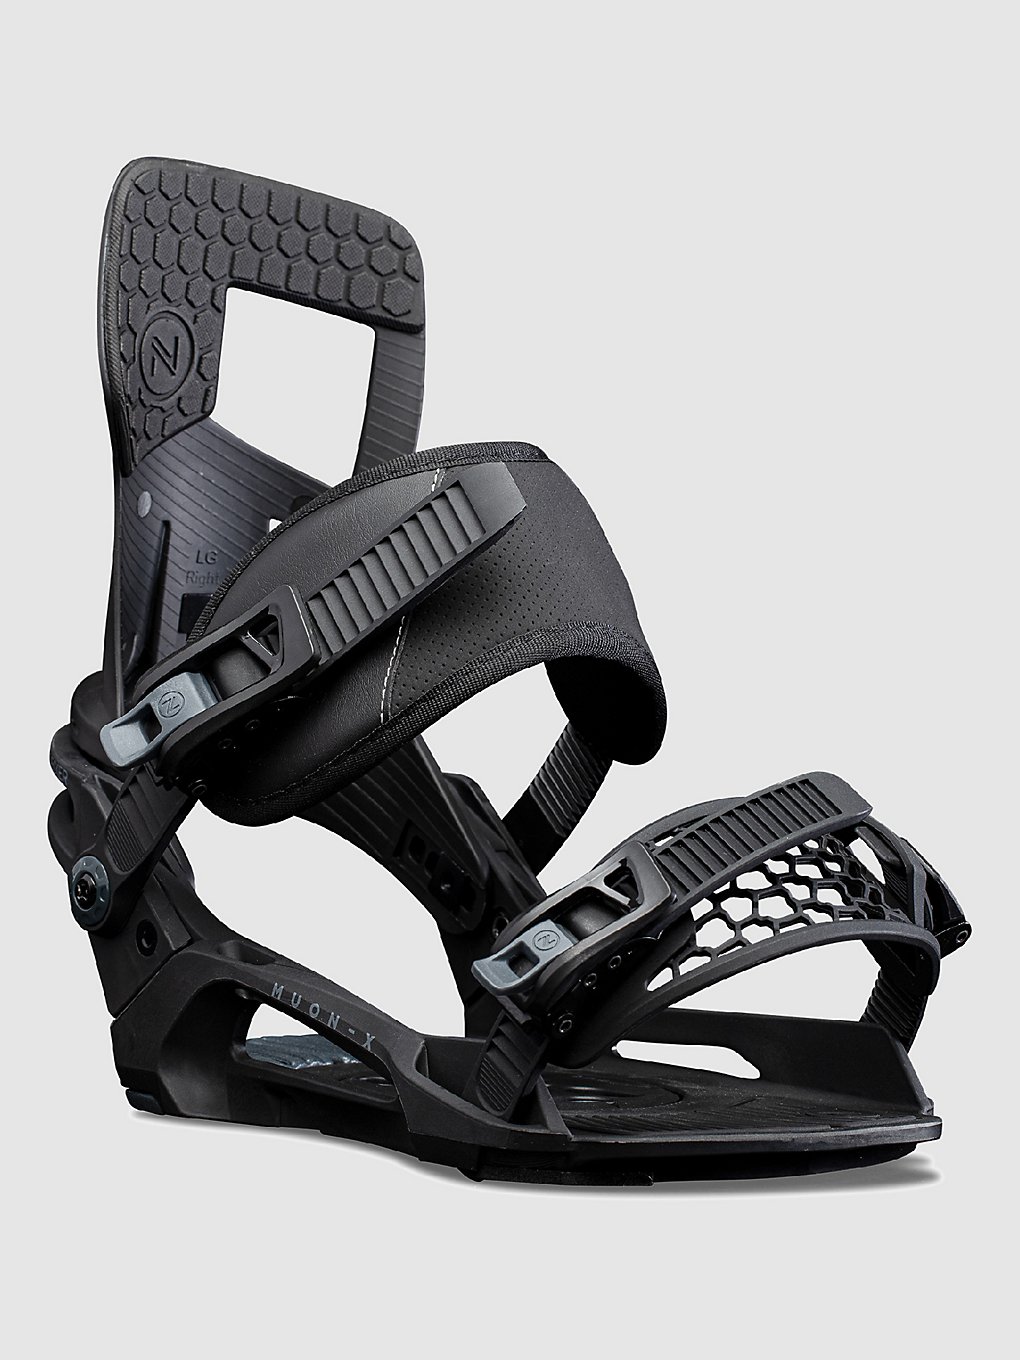 Nidecker Muon X 2023 Snowboard-Bindung black kaufen